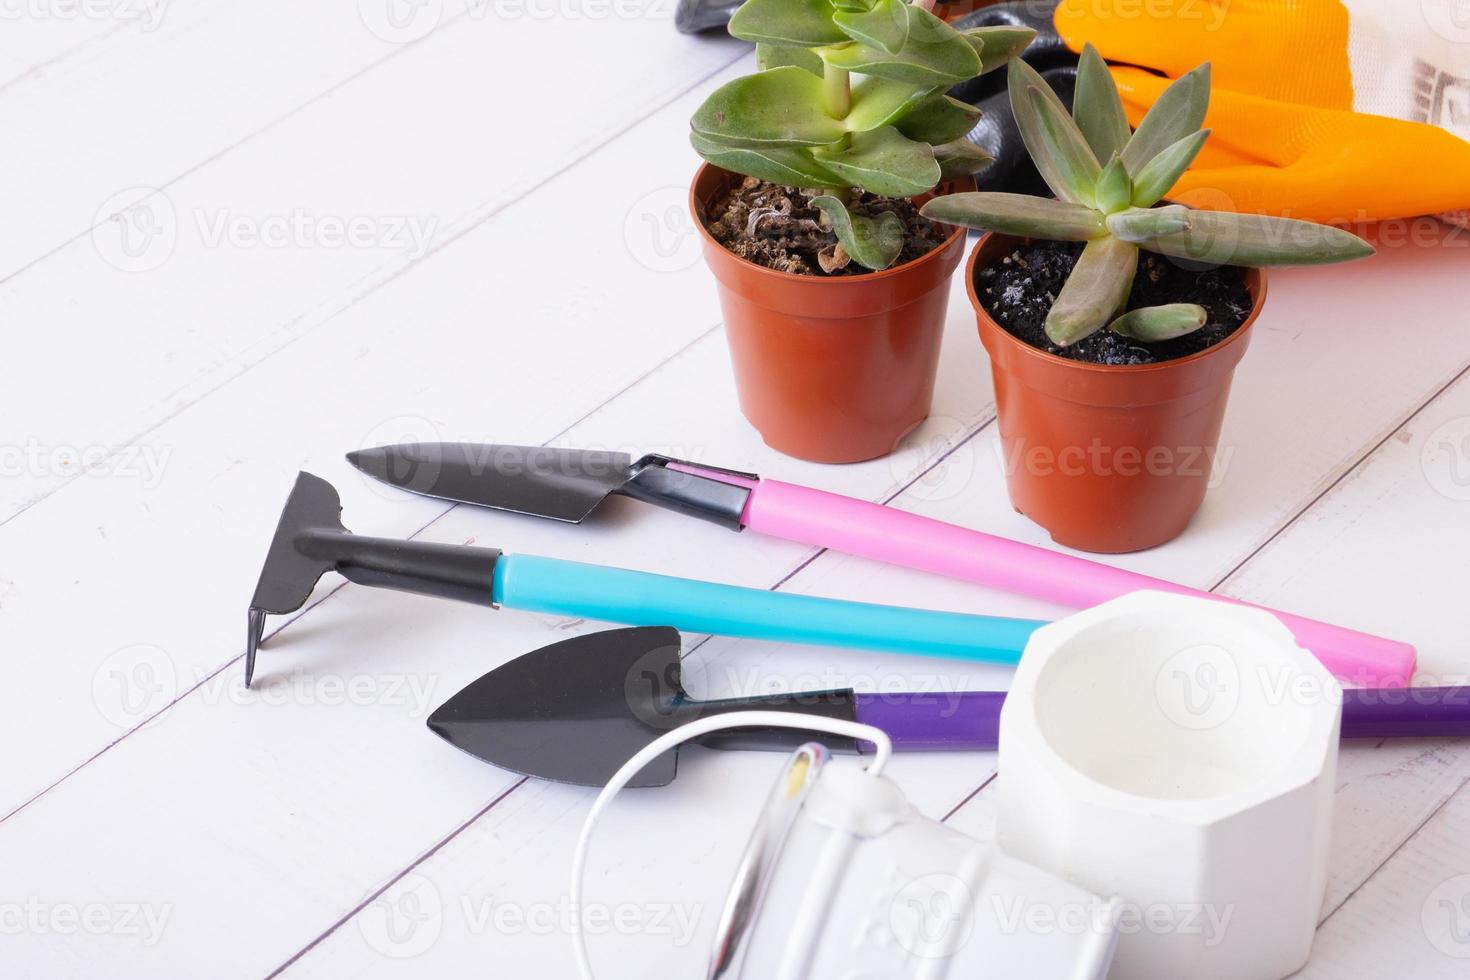 impianti e giardinaggio utensili con guanti, pentole su di legno tavolo. casa giardinaggio, primavera piantare concetto foto